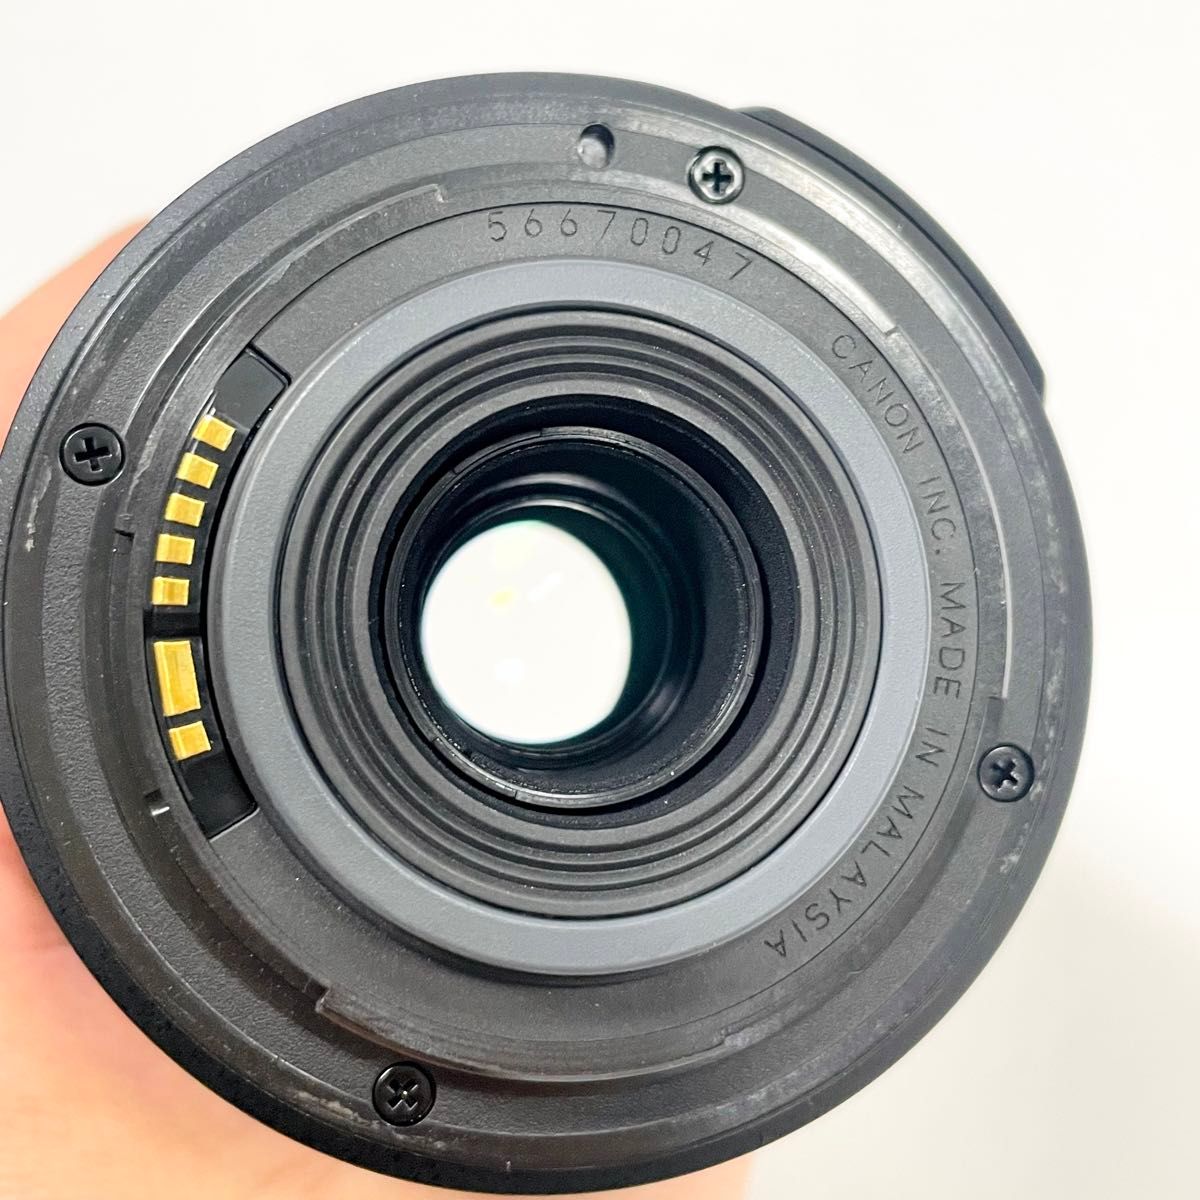 良品 Canon 望遠ズームレンズ EF-S 55-250mm F4-5.6 IS キャノン キヤノン デジタル一眼レフカメラ